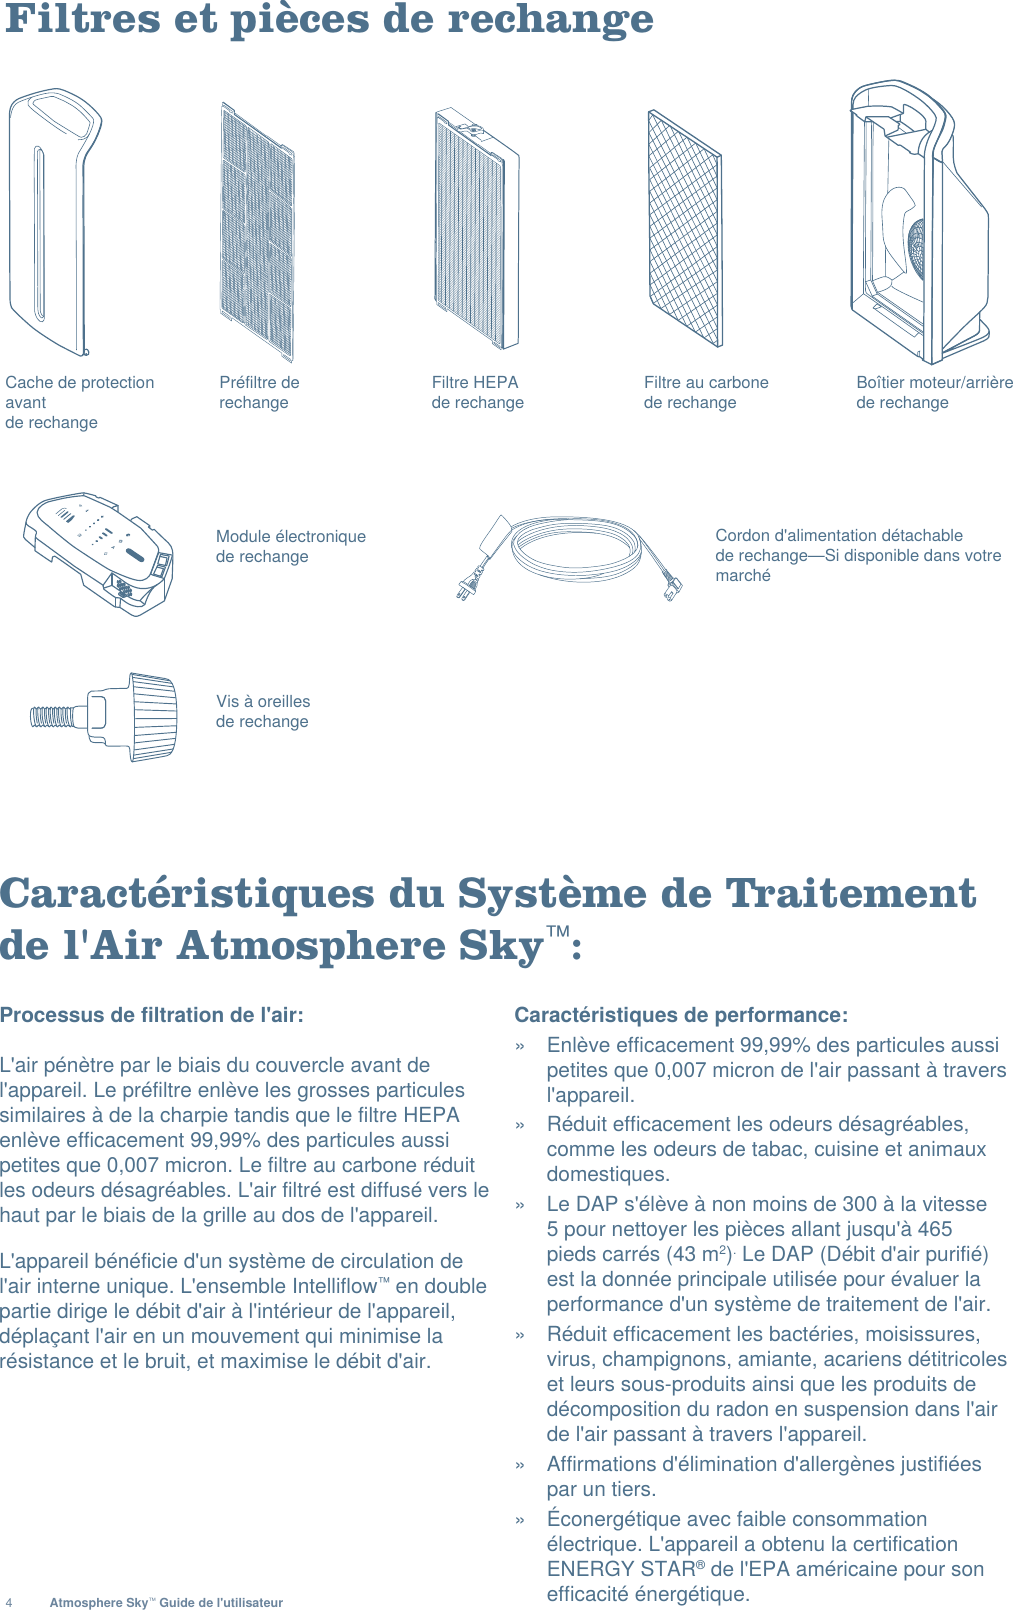 4Atmosphere Sky™ Guide de l&apos;utilisateurFiltres et pièces de rechangeCaractéristiques du Système de Traitement de l&apos;Air Atmosphere Sky™:Processus de filtration de l&apos;air: L&apos;air pénètre par le biais du couvercle avant de l&apos;appareil. Le préfiltre enlève les grosses particules similaires à de la charpie tandis que le filtre HEPA enlève efficacement 99,99% des particules aussi petites que 0,007 micron. Le filtre au carbone réduit les odeurs désagréables. L&apos;air filtré est diffusé vers le haut par le biais de la grille au dos de l&apos;appareil.L&apos;appareil bénéficie d&apos;un système de circulation de l&apos;air interne unique. L&apos;ensemble Intelliflow™ en double partie dirige le débit d&apos;air à l&apos;intérieur de l&apos;appareil, déplaçant l&apos;air en un mouvement qui minimise la résistance et le bruit, et maximise le débit d&apos;air. Caractéristiques de performance: »  Enlève efficacement 99,99% des particules aussi petites que 0,007 micron de l&apos;air passant à travers l&apos;appareil. »  Réduit efficacement les odeurs désagréables, comme les odeurs de tabac, cuisine et animaux domestiques. »  Le DAP s&apos;élève à non moins de 300 à la vitesse 5 pour nettoyer les pièces allant jusqu&apos;à 465 pieds carrés (43 m2). Le DAP (Débit d&apos;air purifié) est la donnée principale utilisée pour évaluer la performance d&apos;un système de traitement de l&apos;air. »  Réduit efficacement les bactéries, moisissures, virus, champignons, amiante, acariens détitricoles et leurs sous-produits ainsi que les produits de décomposition du radon en suspension dans l&apos;air de l&apos;air passant à travers l&apos;appareil. »  Affirmations d&apos;élimination d&apos;allergènes justifiées par un tiers. »  Éconergétique avec faible consommation électrique. L&apos;appareil a obtenu la certification ENERGY STAR® de l&apos;EPA américaine pour son efficacité énergétique.Filtre HEPA de rechangeFiltre au carbone de rechangePréfiltre de  rechangeBoîtier moteur/arrière de rechange Cache de protection avantde rechange Module électronique de rechange Cordon d&apos;alimentation détachablede rechange—Si disponible dans votre marchéVis à oreilles  de rechange 